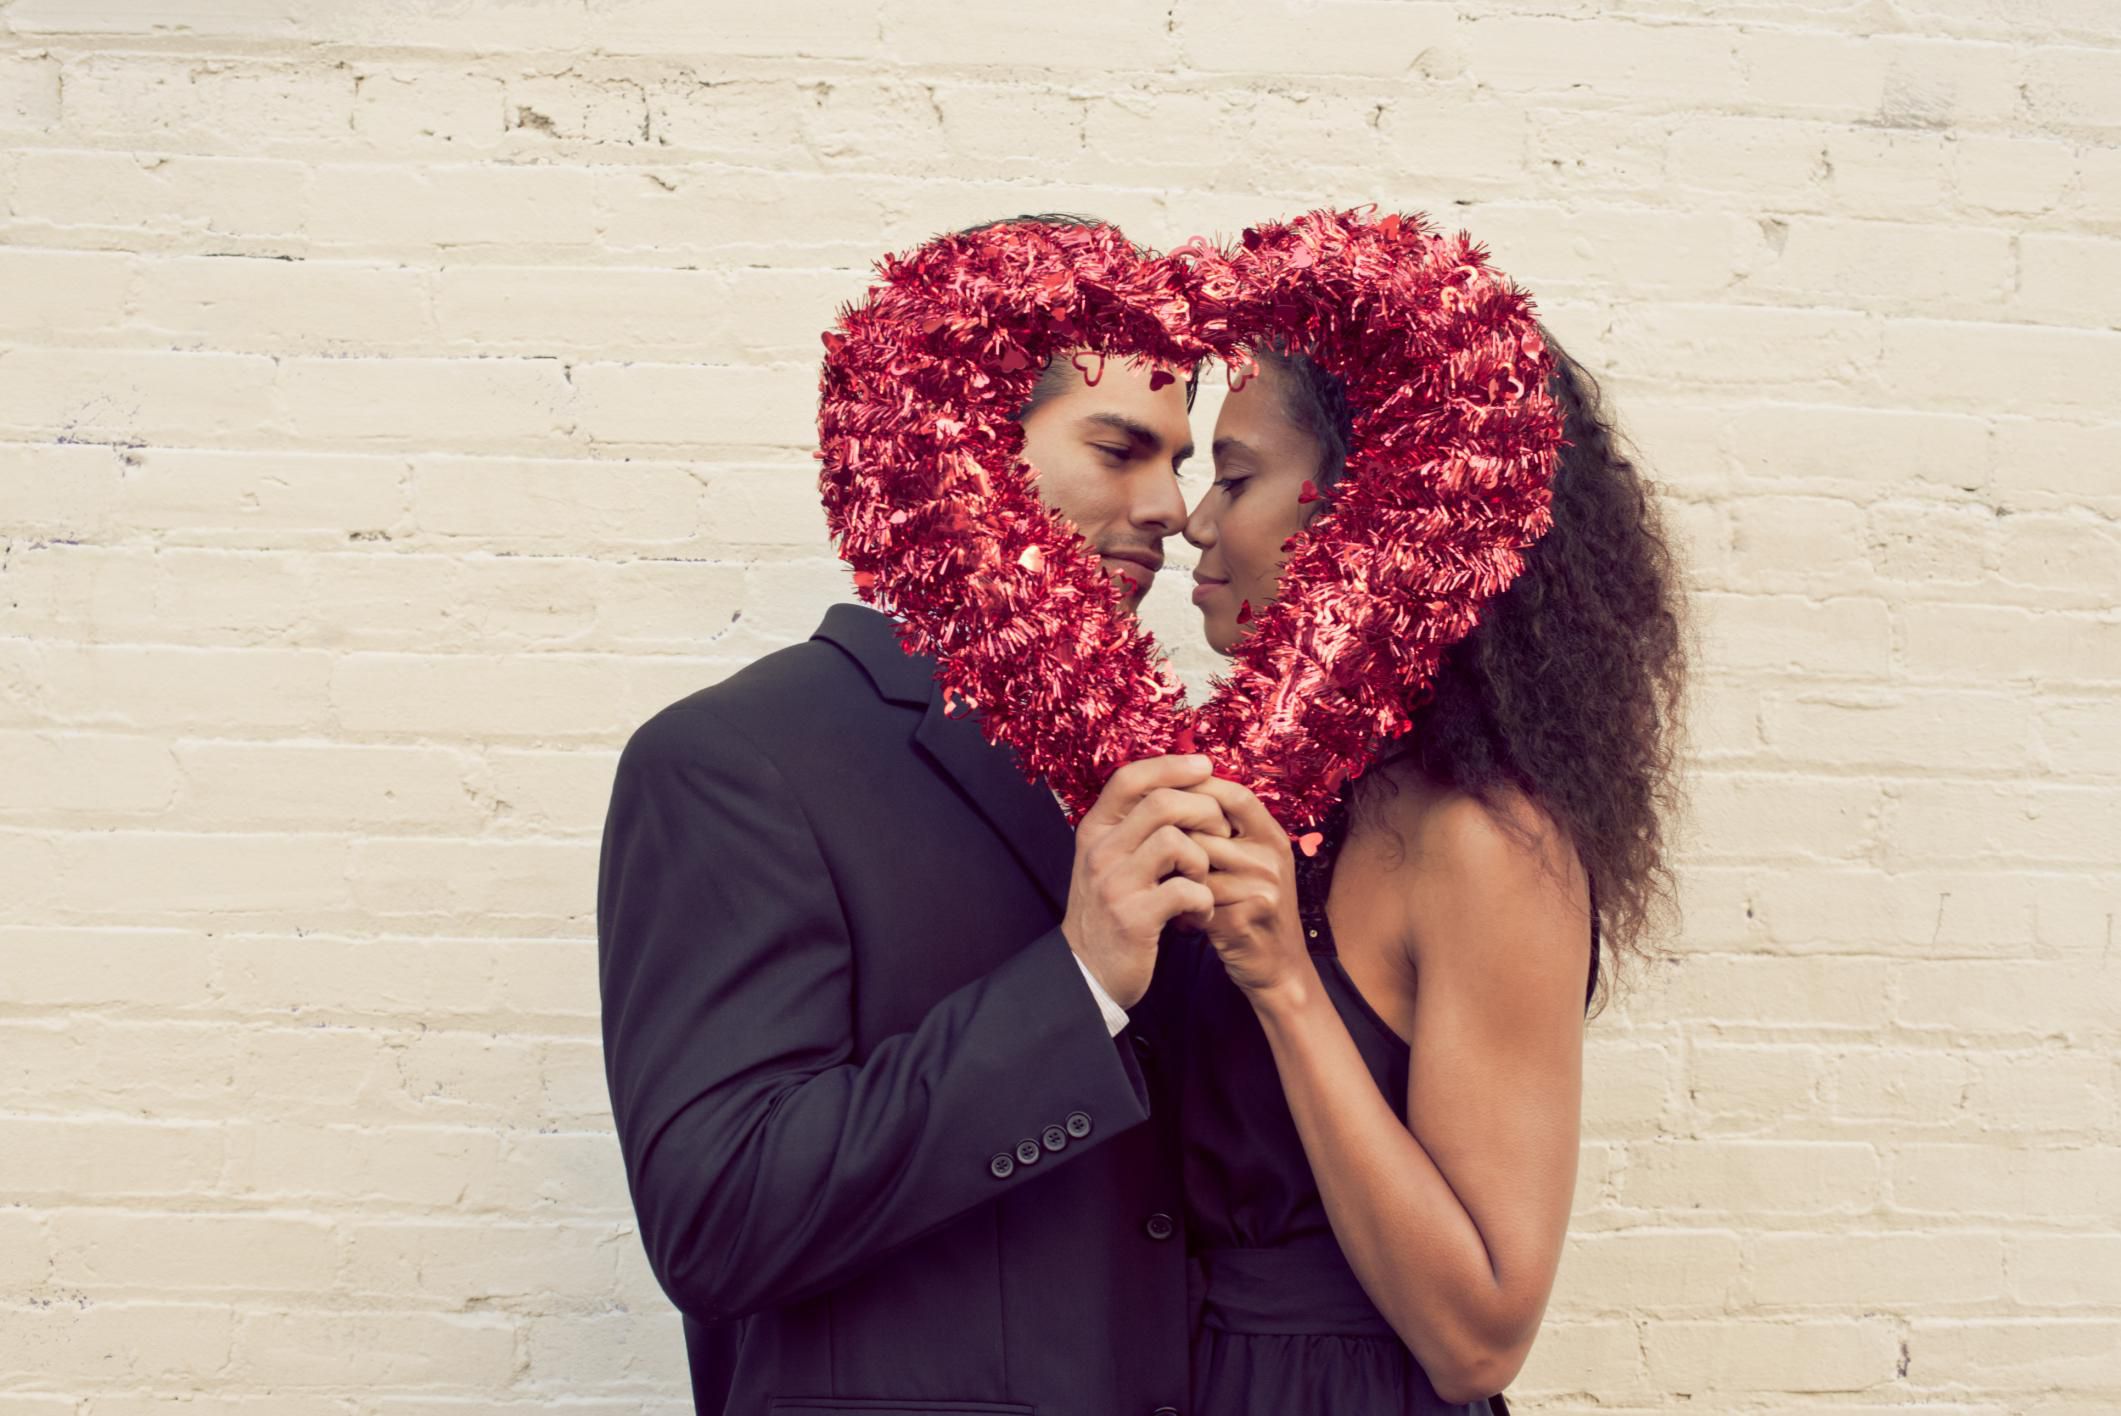 Komik Sevgililer Günü mesajları   Komik 14 Şubat Sevgililer günü mesajları resimli